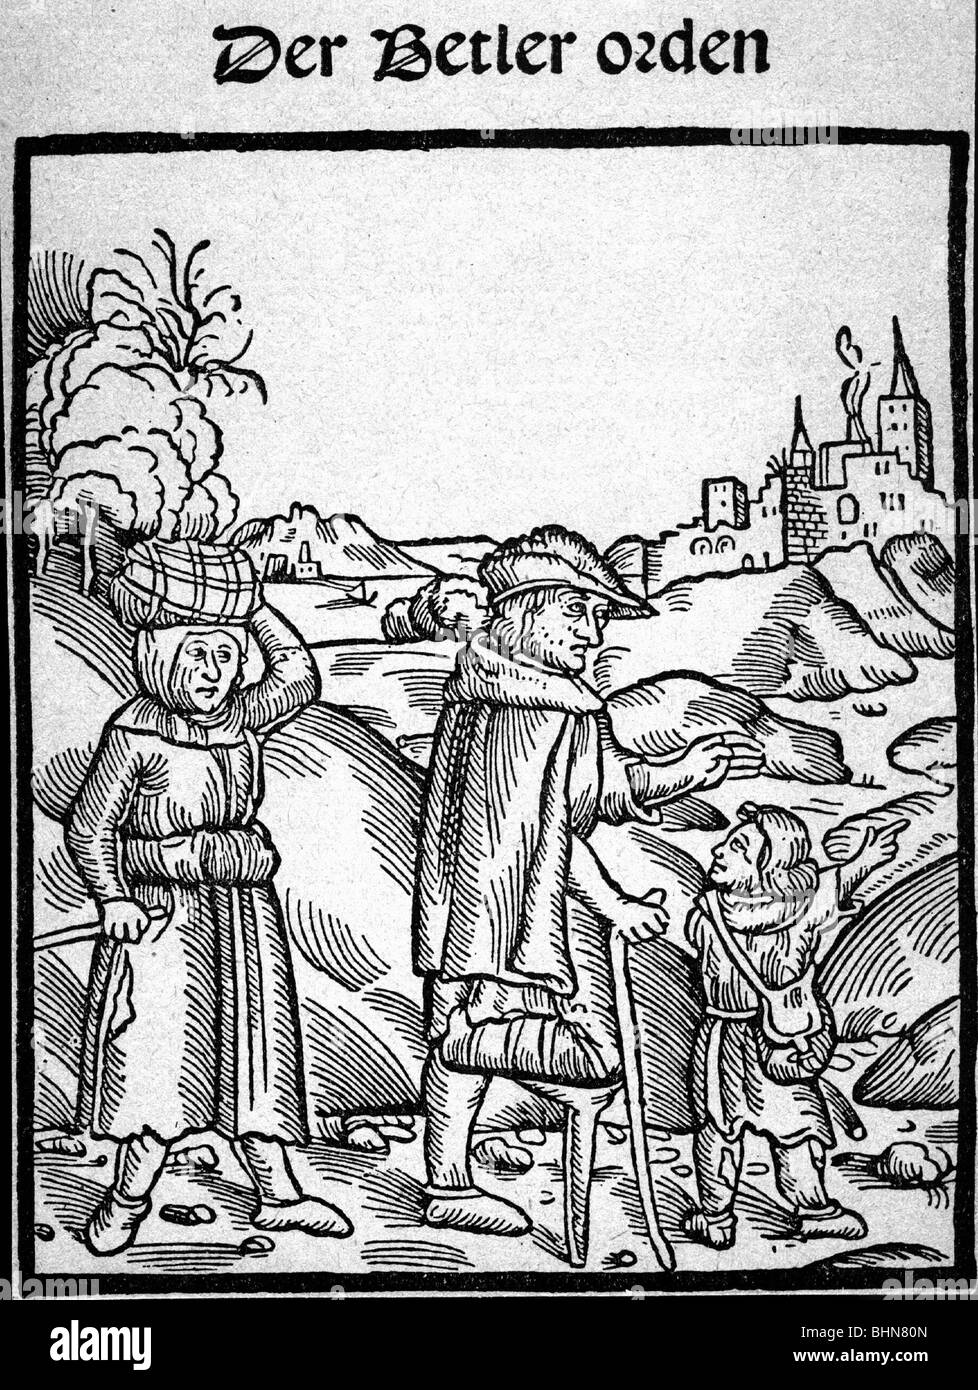 Menschen, Armut, Elend, Mittelalter, Mittelalter, Bettler, Titel eines Buches, das vor Bettlern, Holzschnitten, etwa 1500, warnt Stockfoto